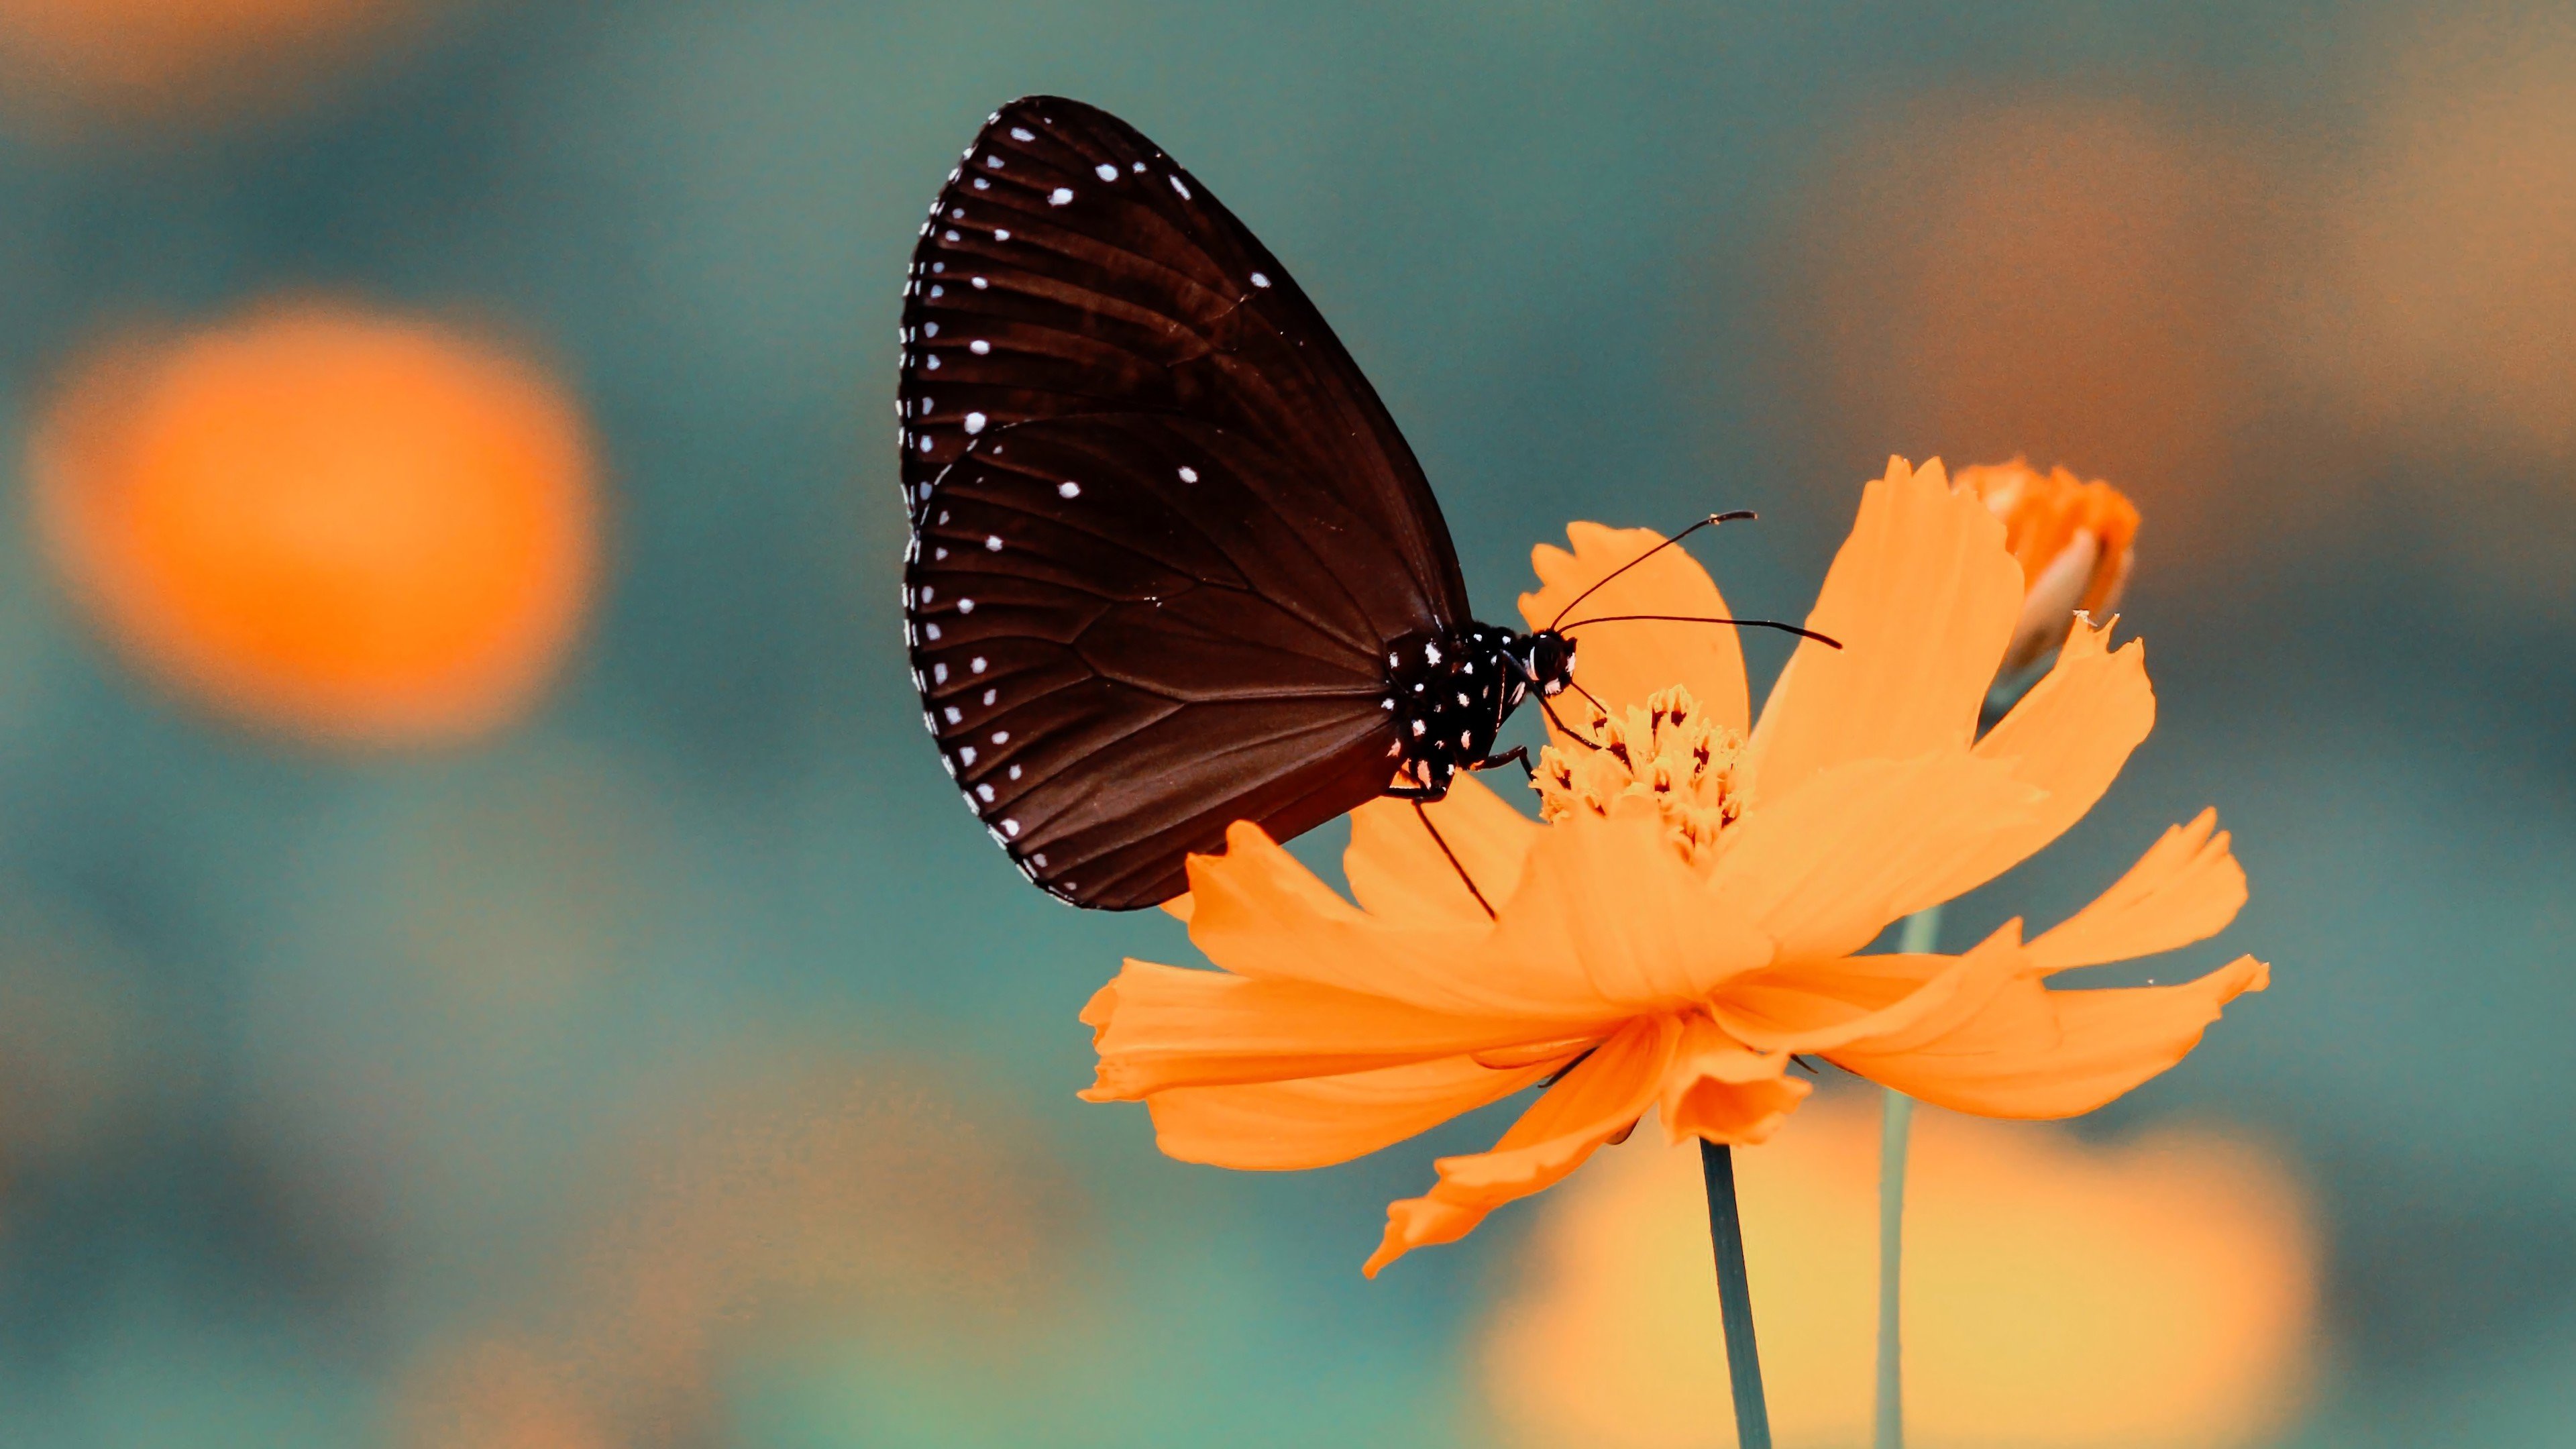 Fondos de pantalla Mariposa en una flor